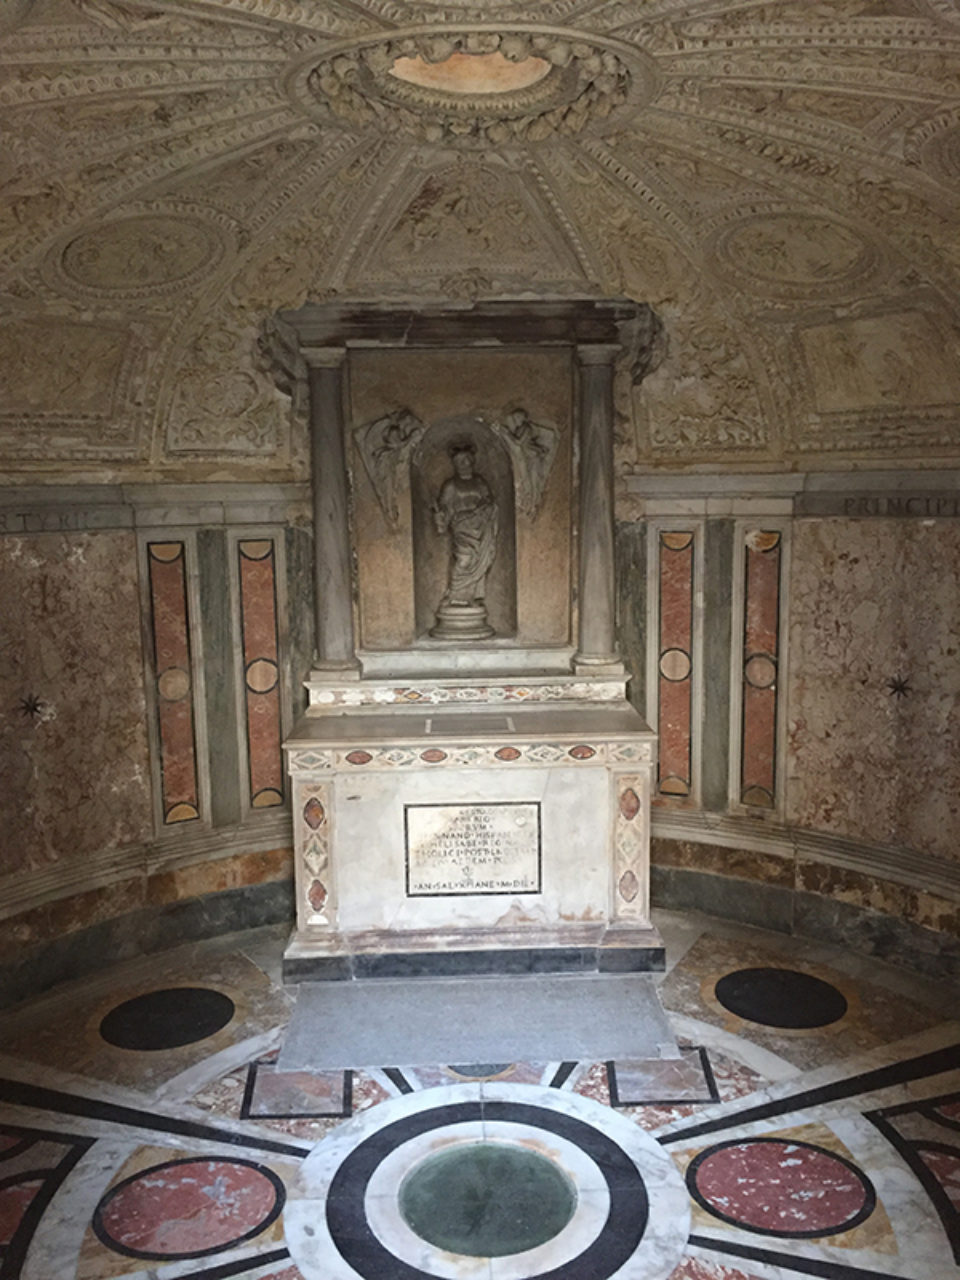 The interior of the Tempietto